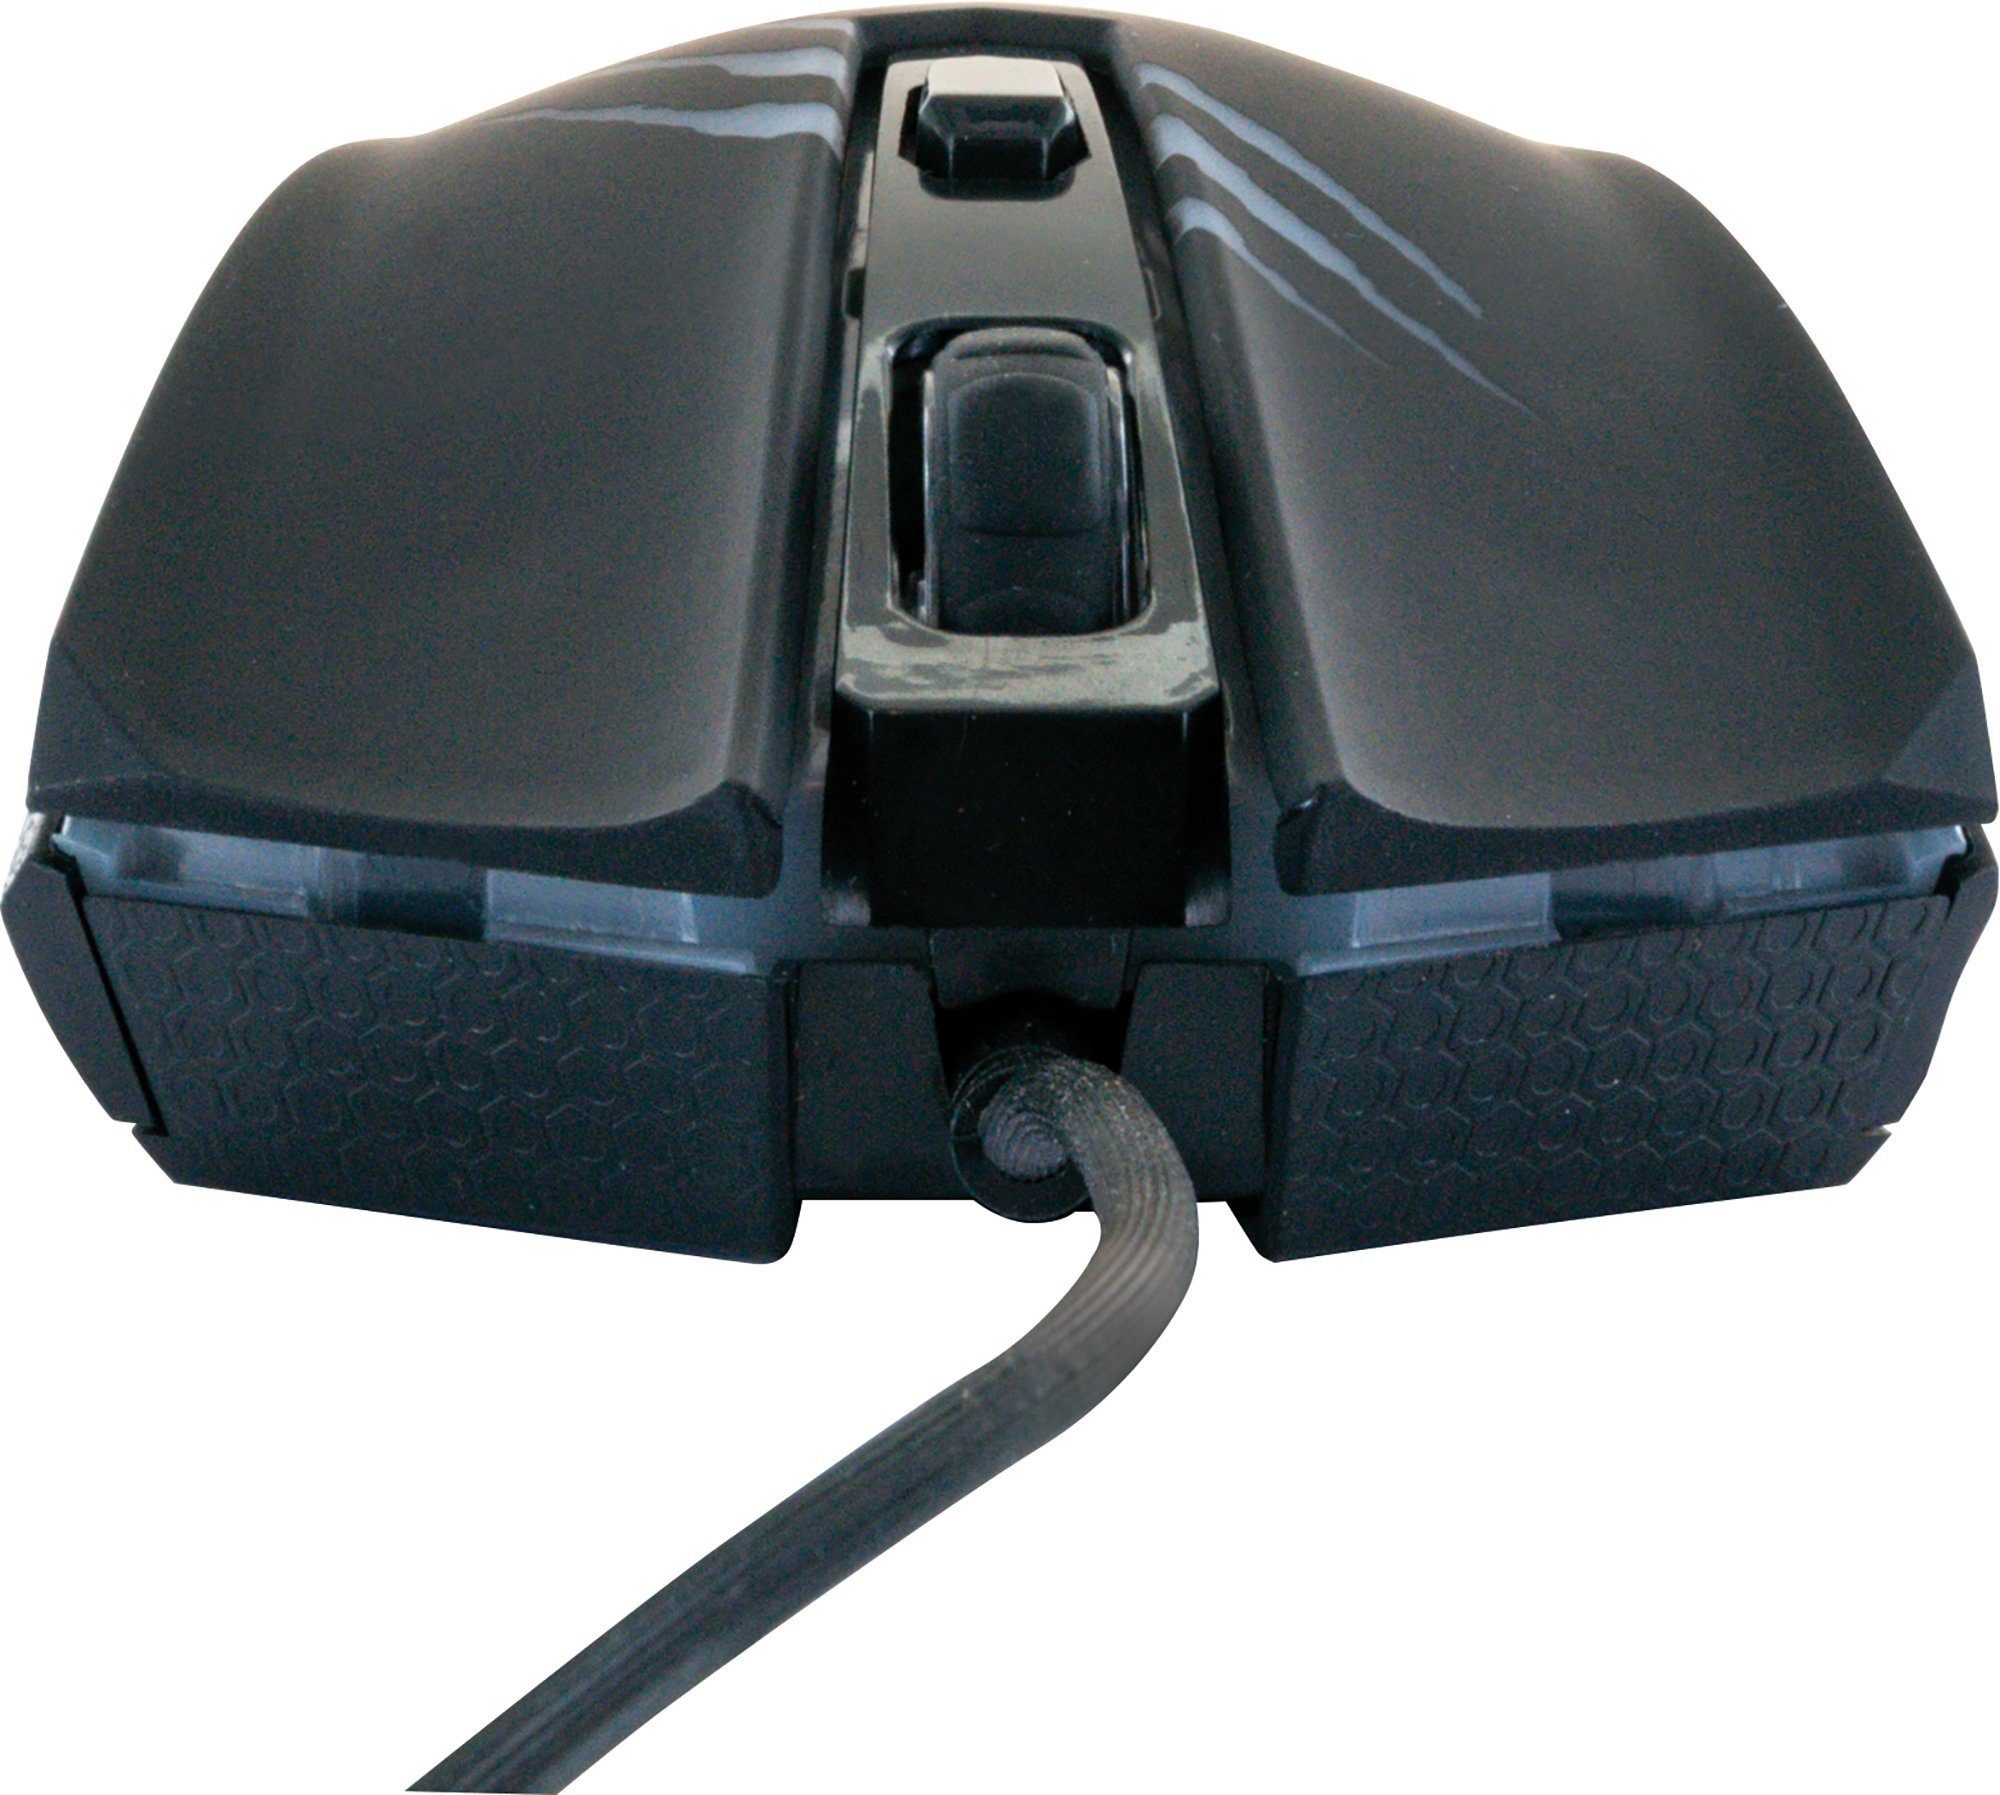 Schwaiger GM3000 (kabelgebunden, Hindergrundbeleuchtung) Gaming-Maus farbwechselnde